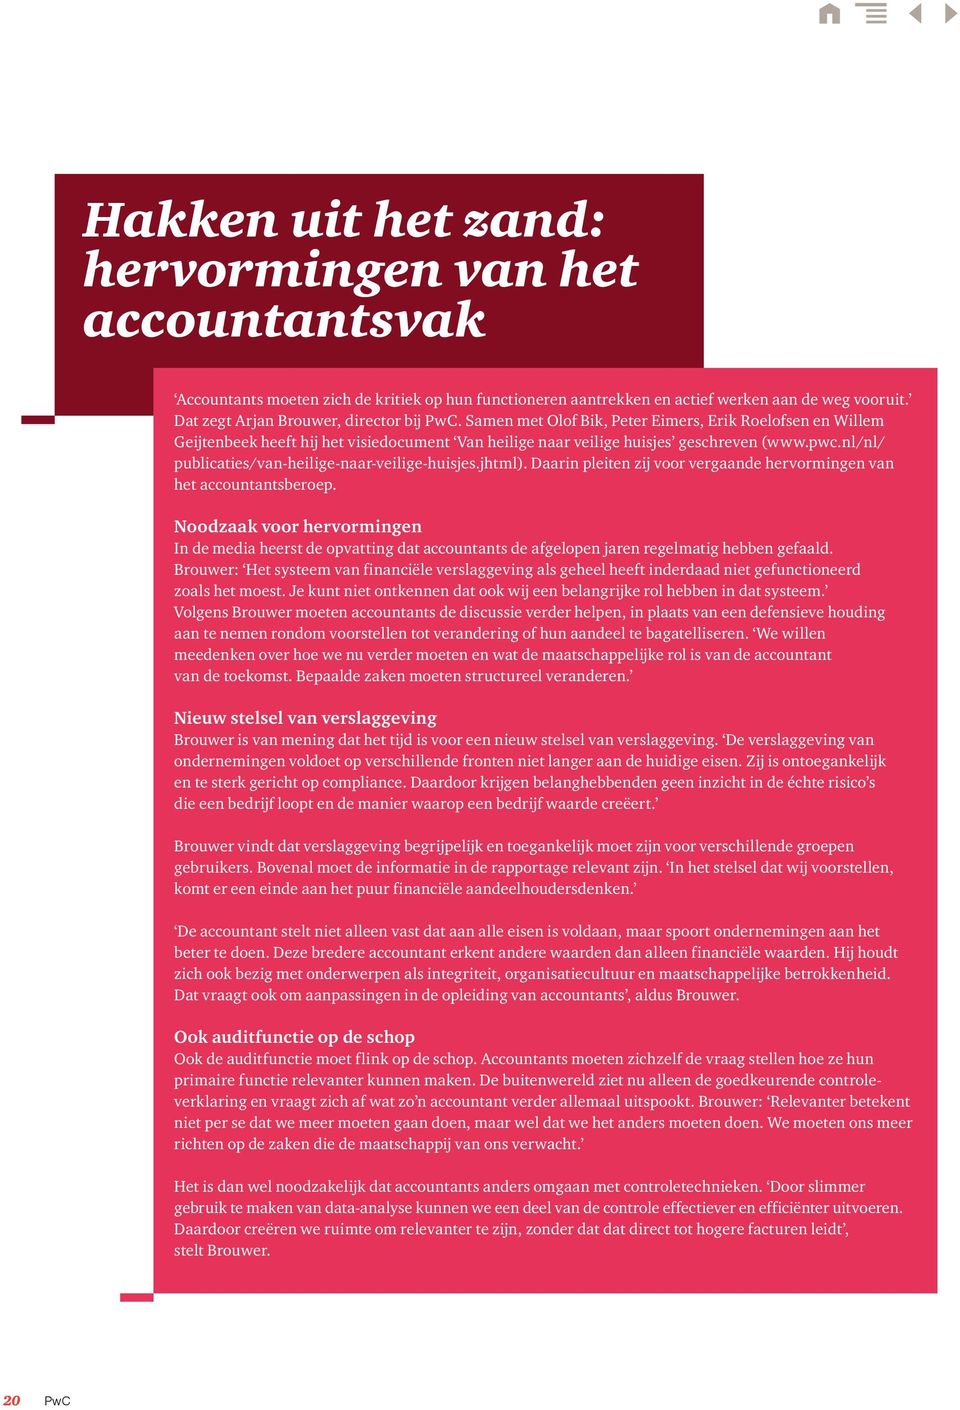 nl/nl/ publicaties/van-heilige-naar-veilige-huisjes.jhtml). Daarin pleiten zij voor vergaande hervormingen van het accountantsberoep.